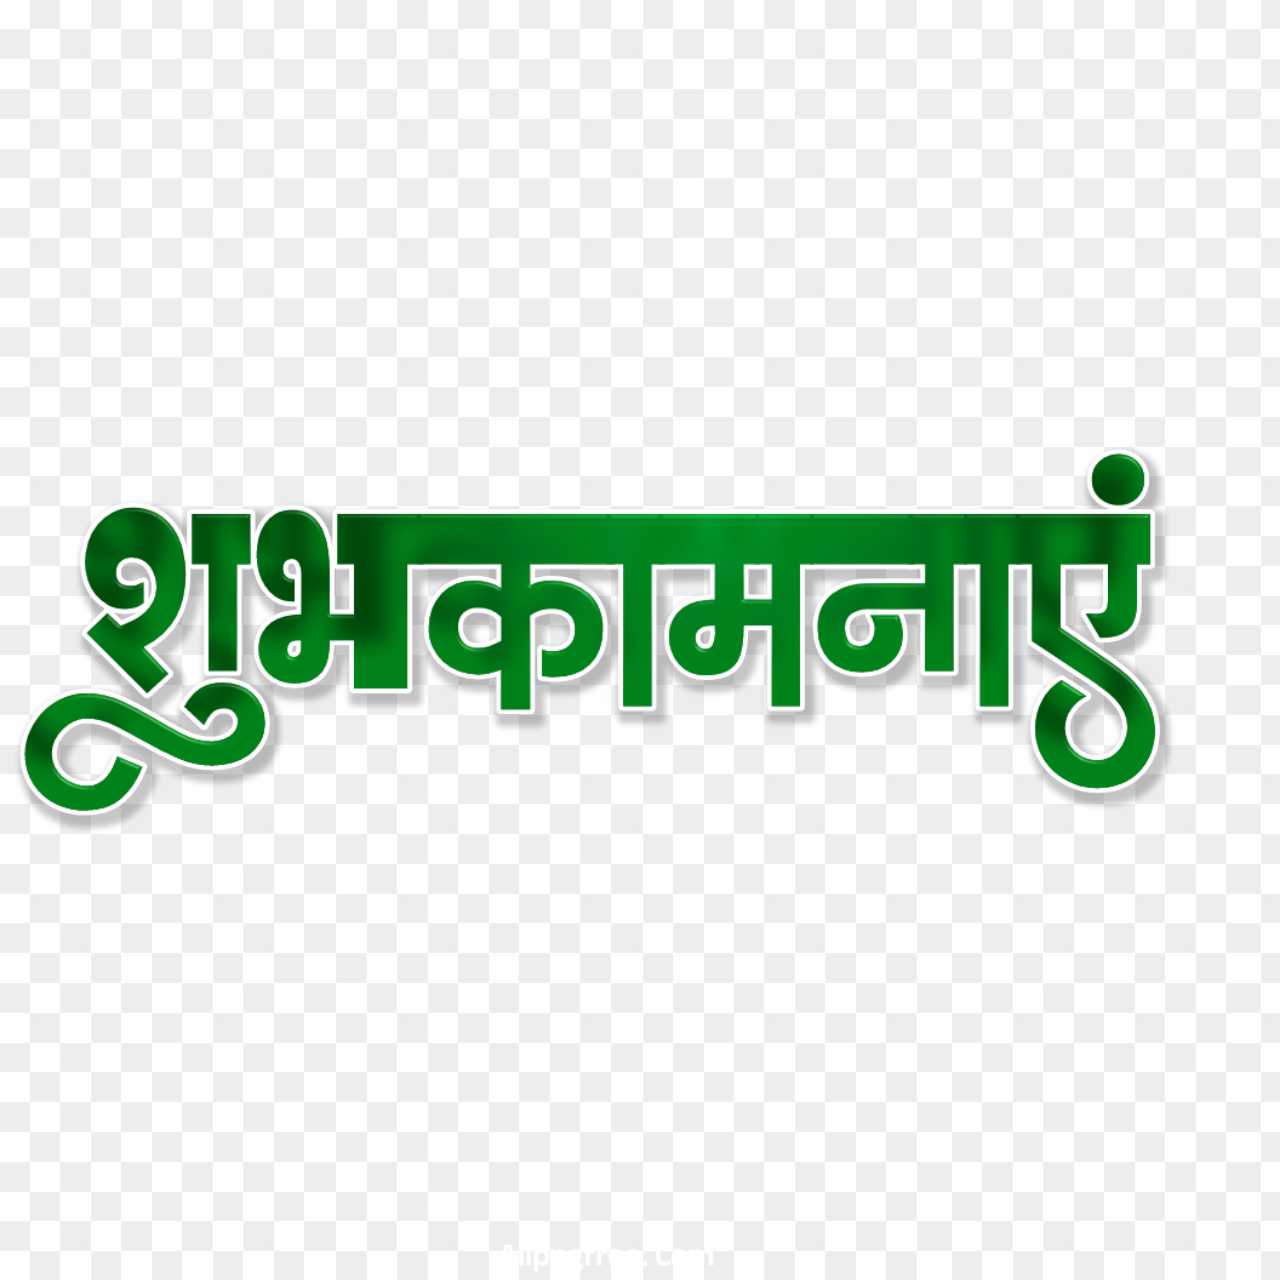 Shubhkamnaen Hindi text PNG images